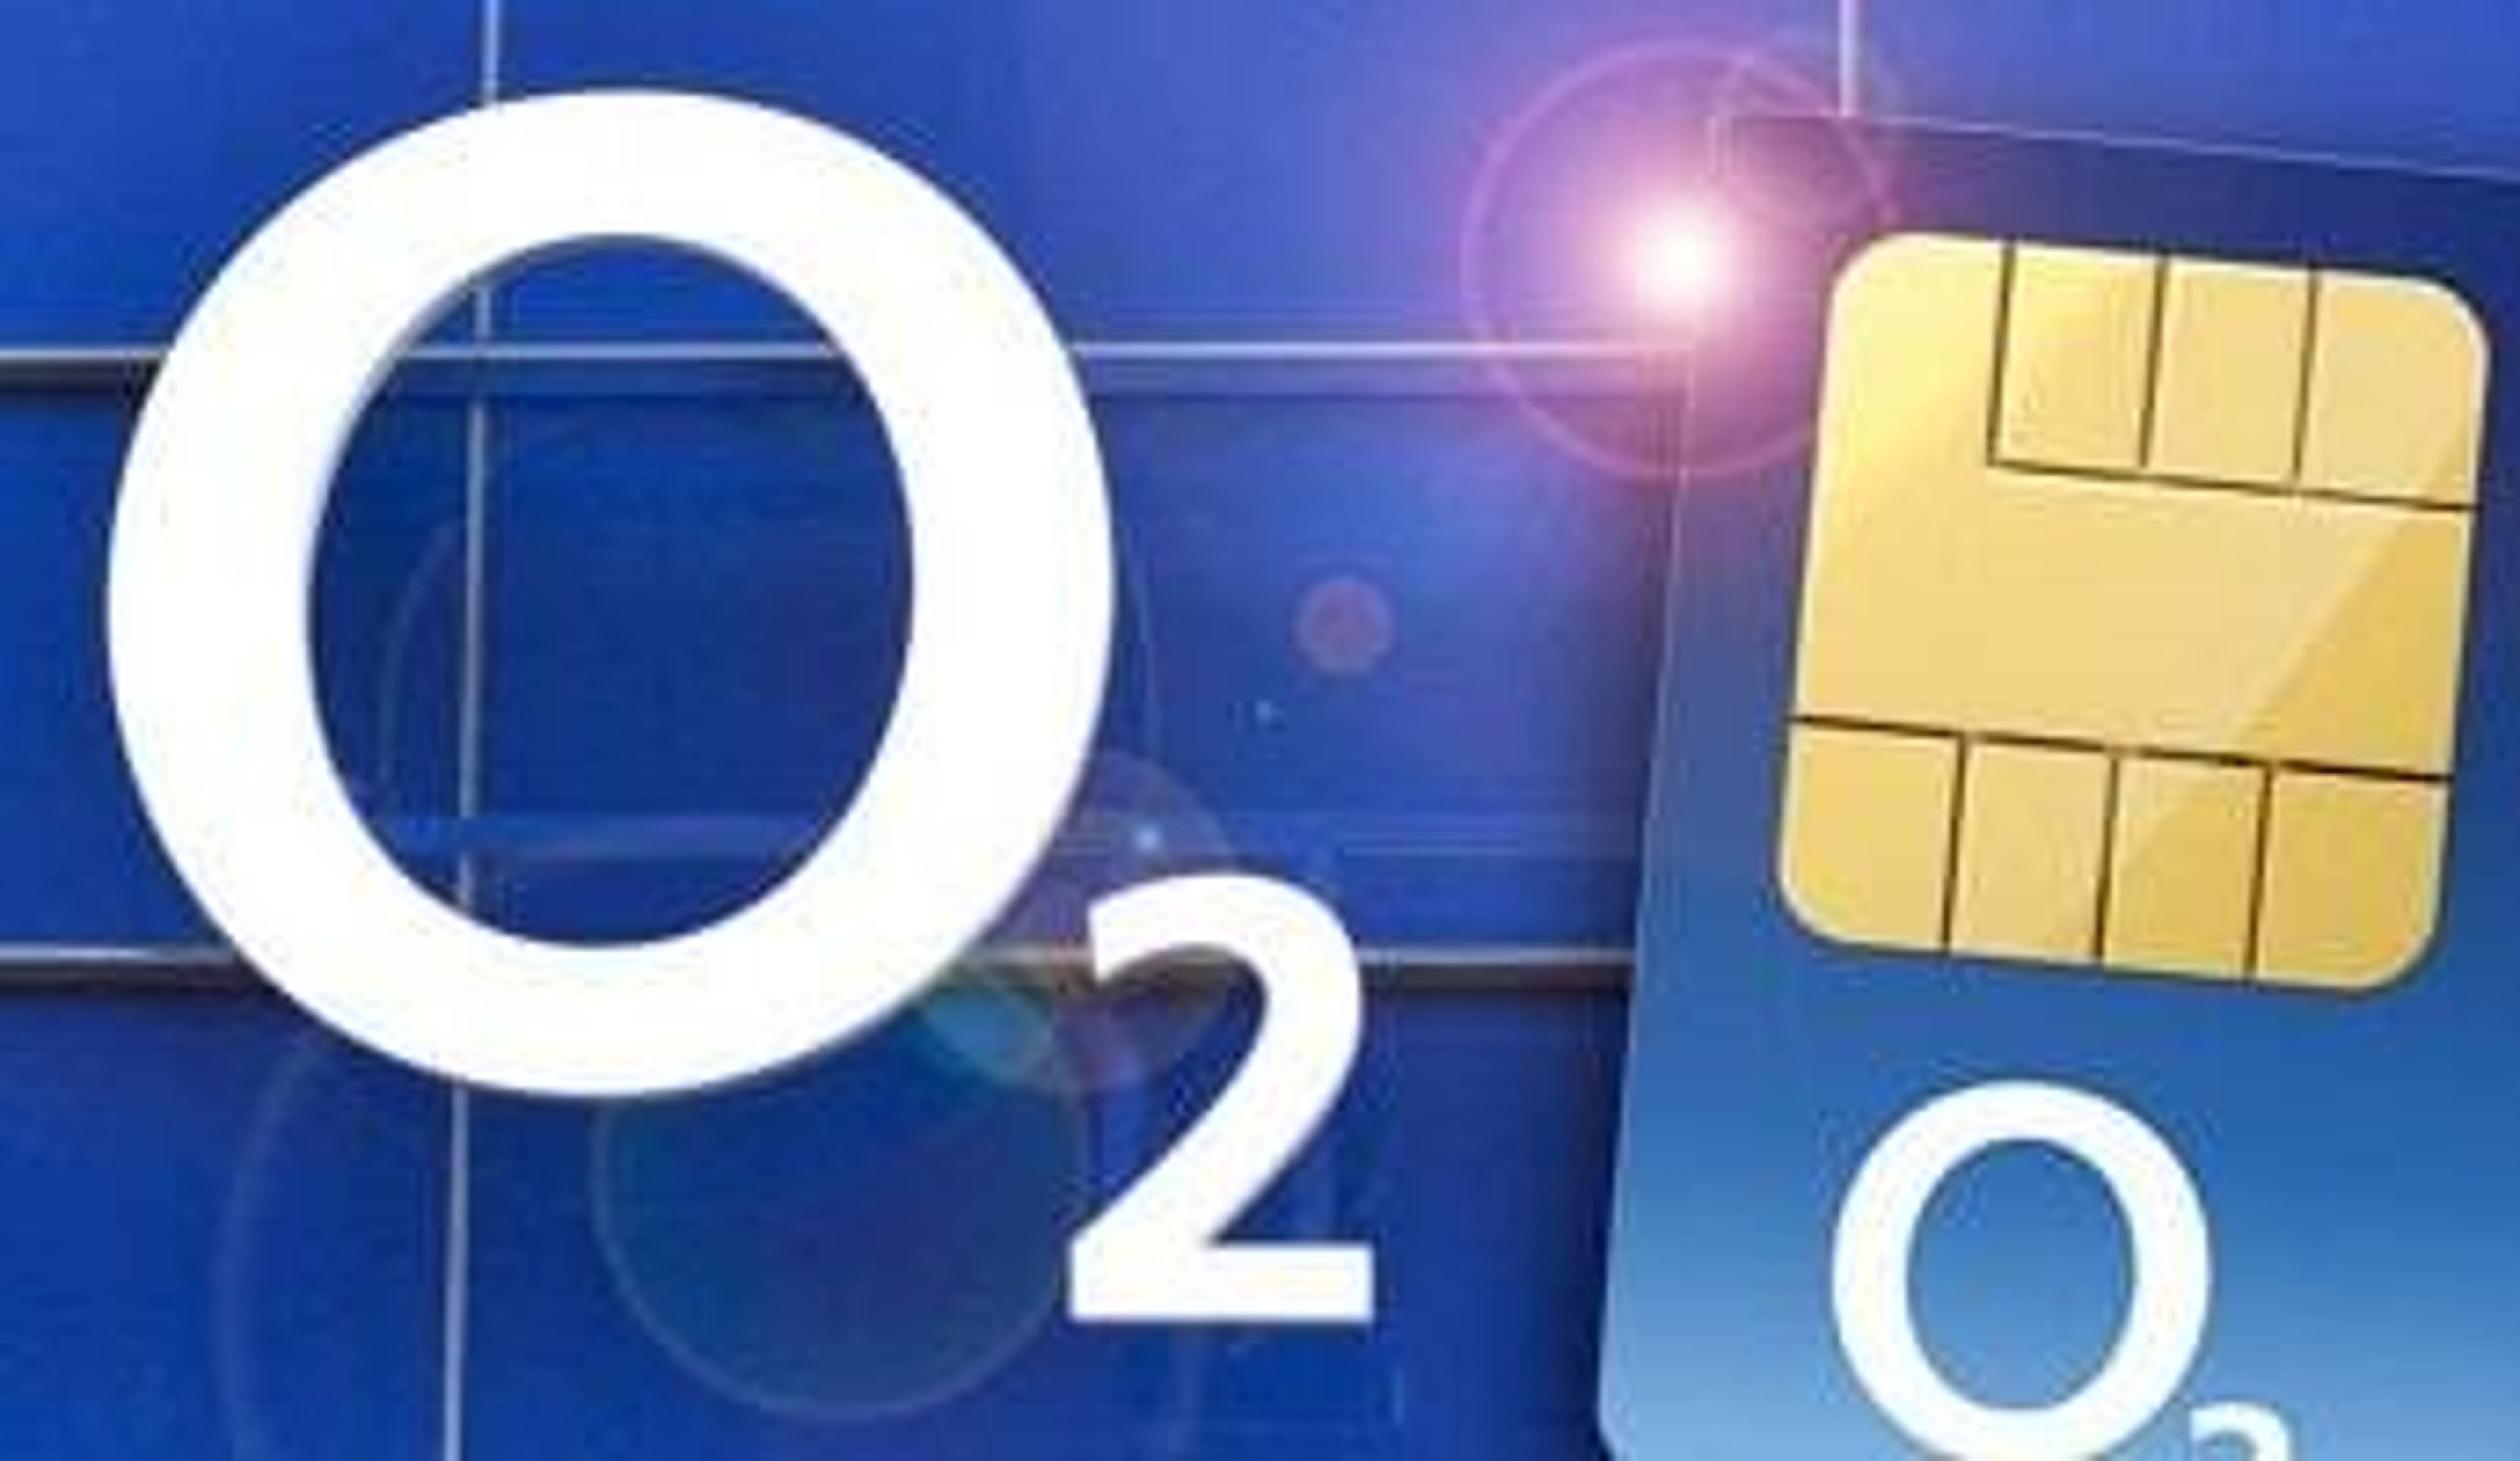  The O2 Logo next to a gleaming O2 SIM card 